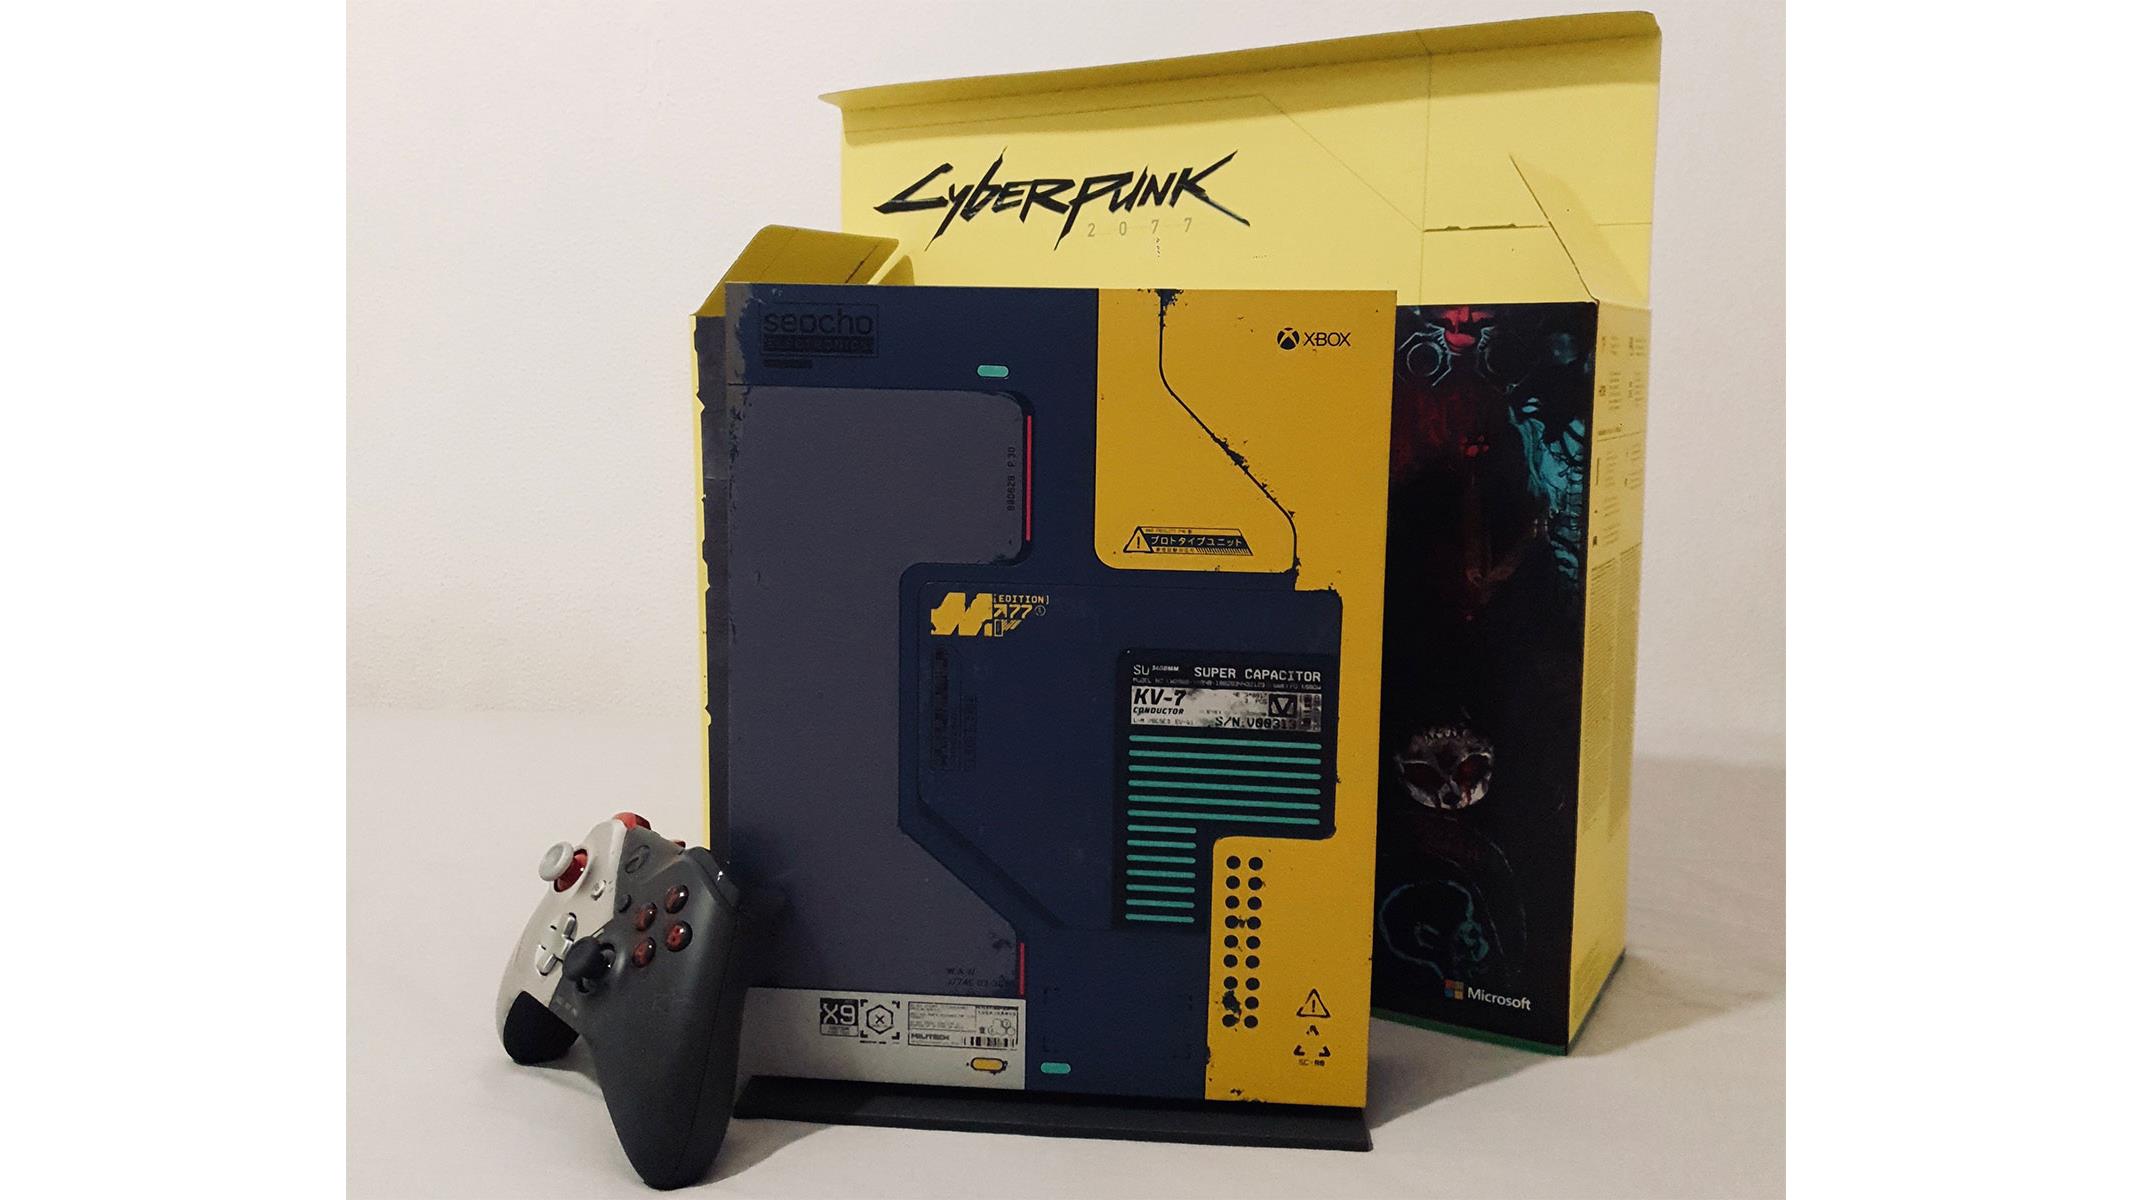 cyberpunk 2077 xbox one x bundle price